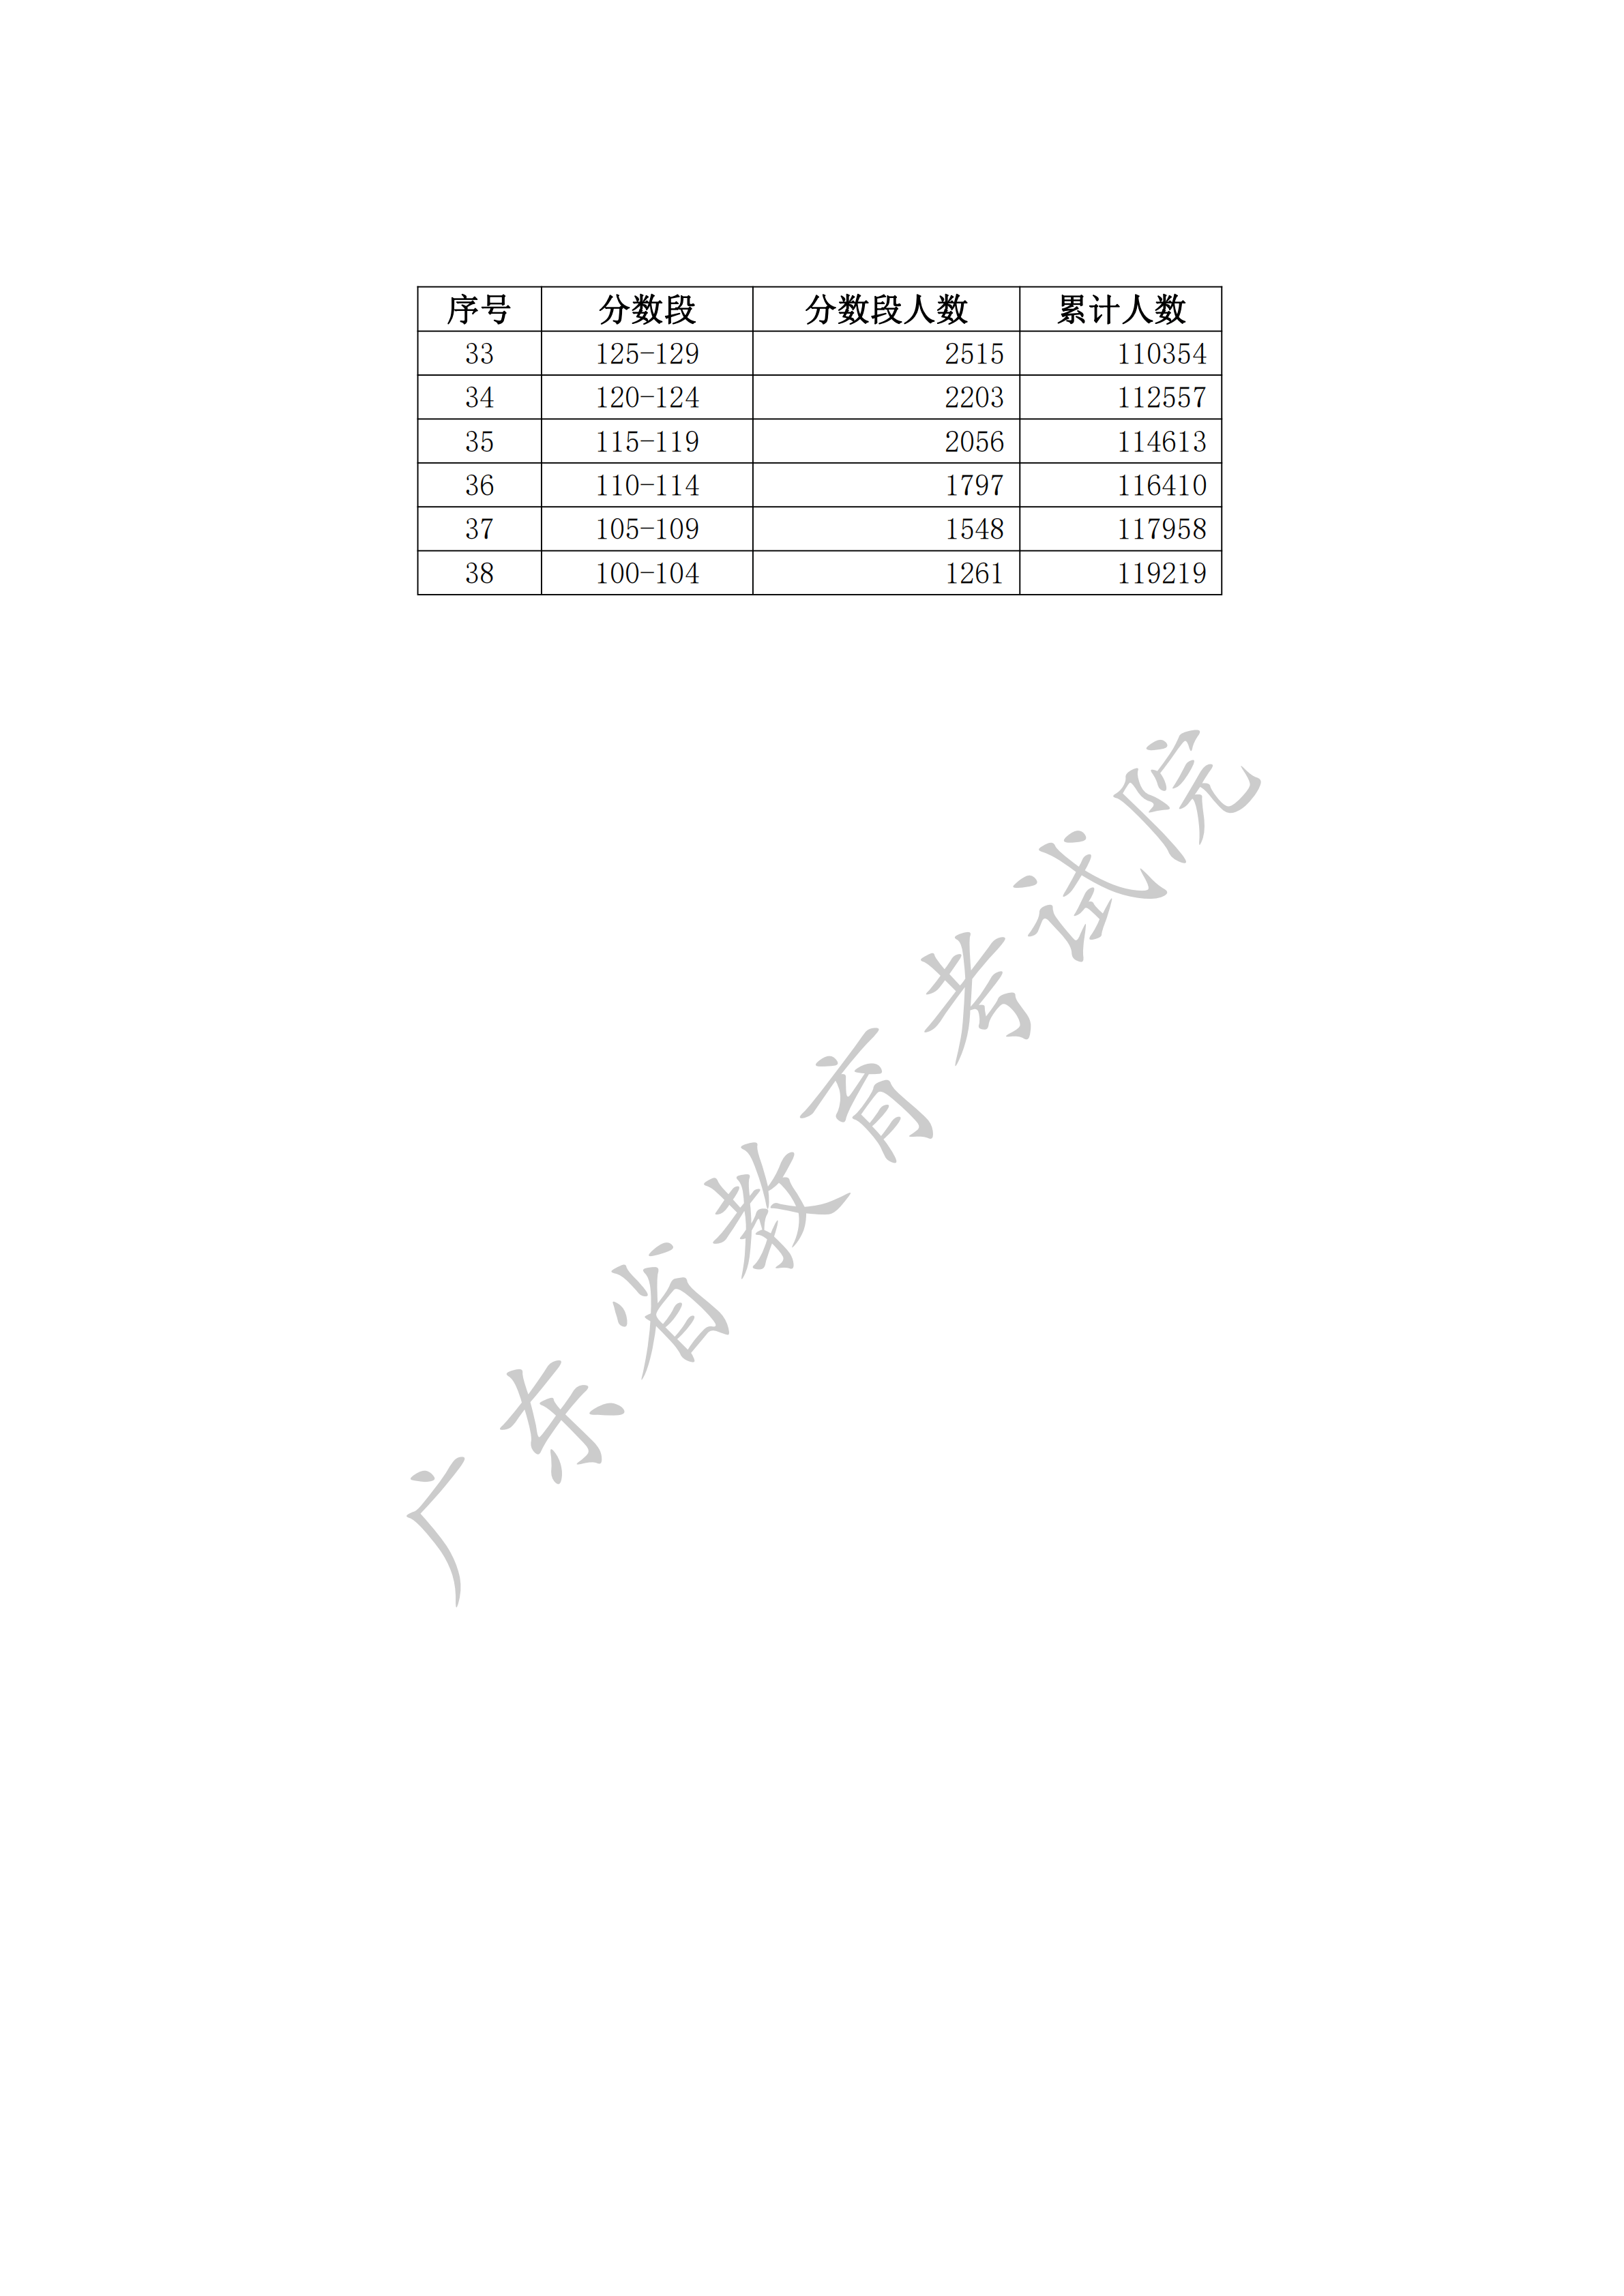 2020广东高考一分一段表（依据学考成绩文科）